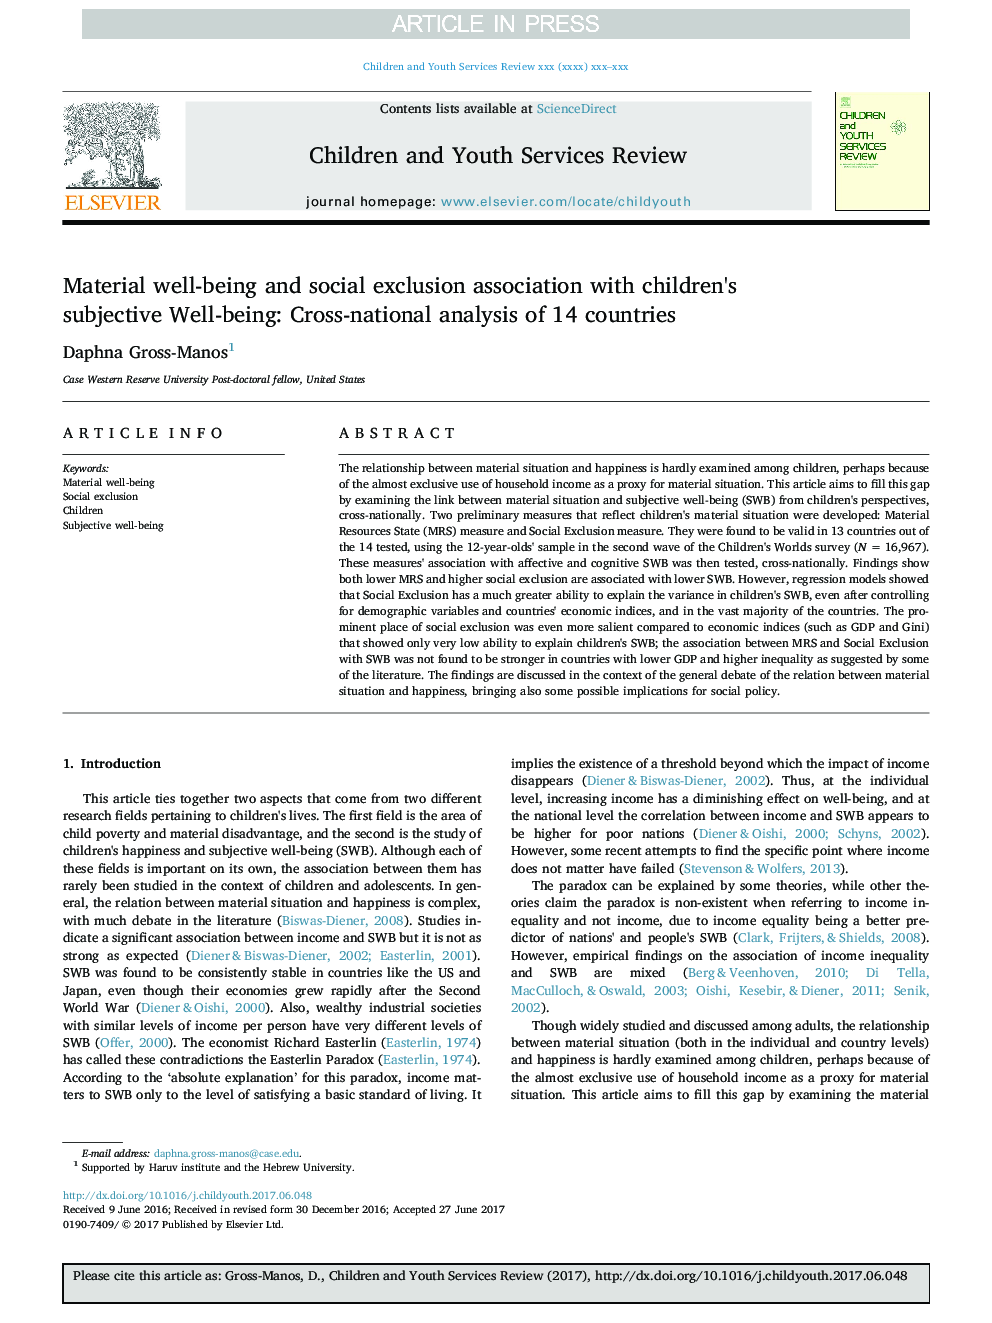 رفاه و رفاه اجتماعی با رضایت ذهنی کودکان: تجزیه و تحلیل بینالمللی از 14 کشور 